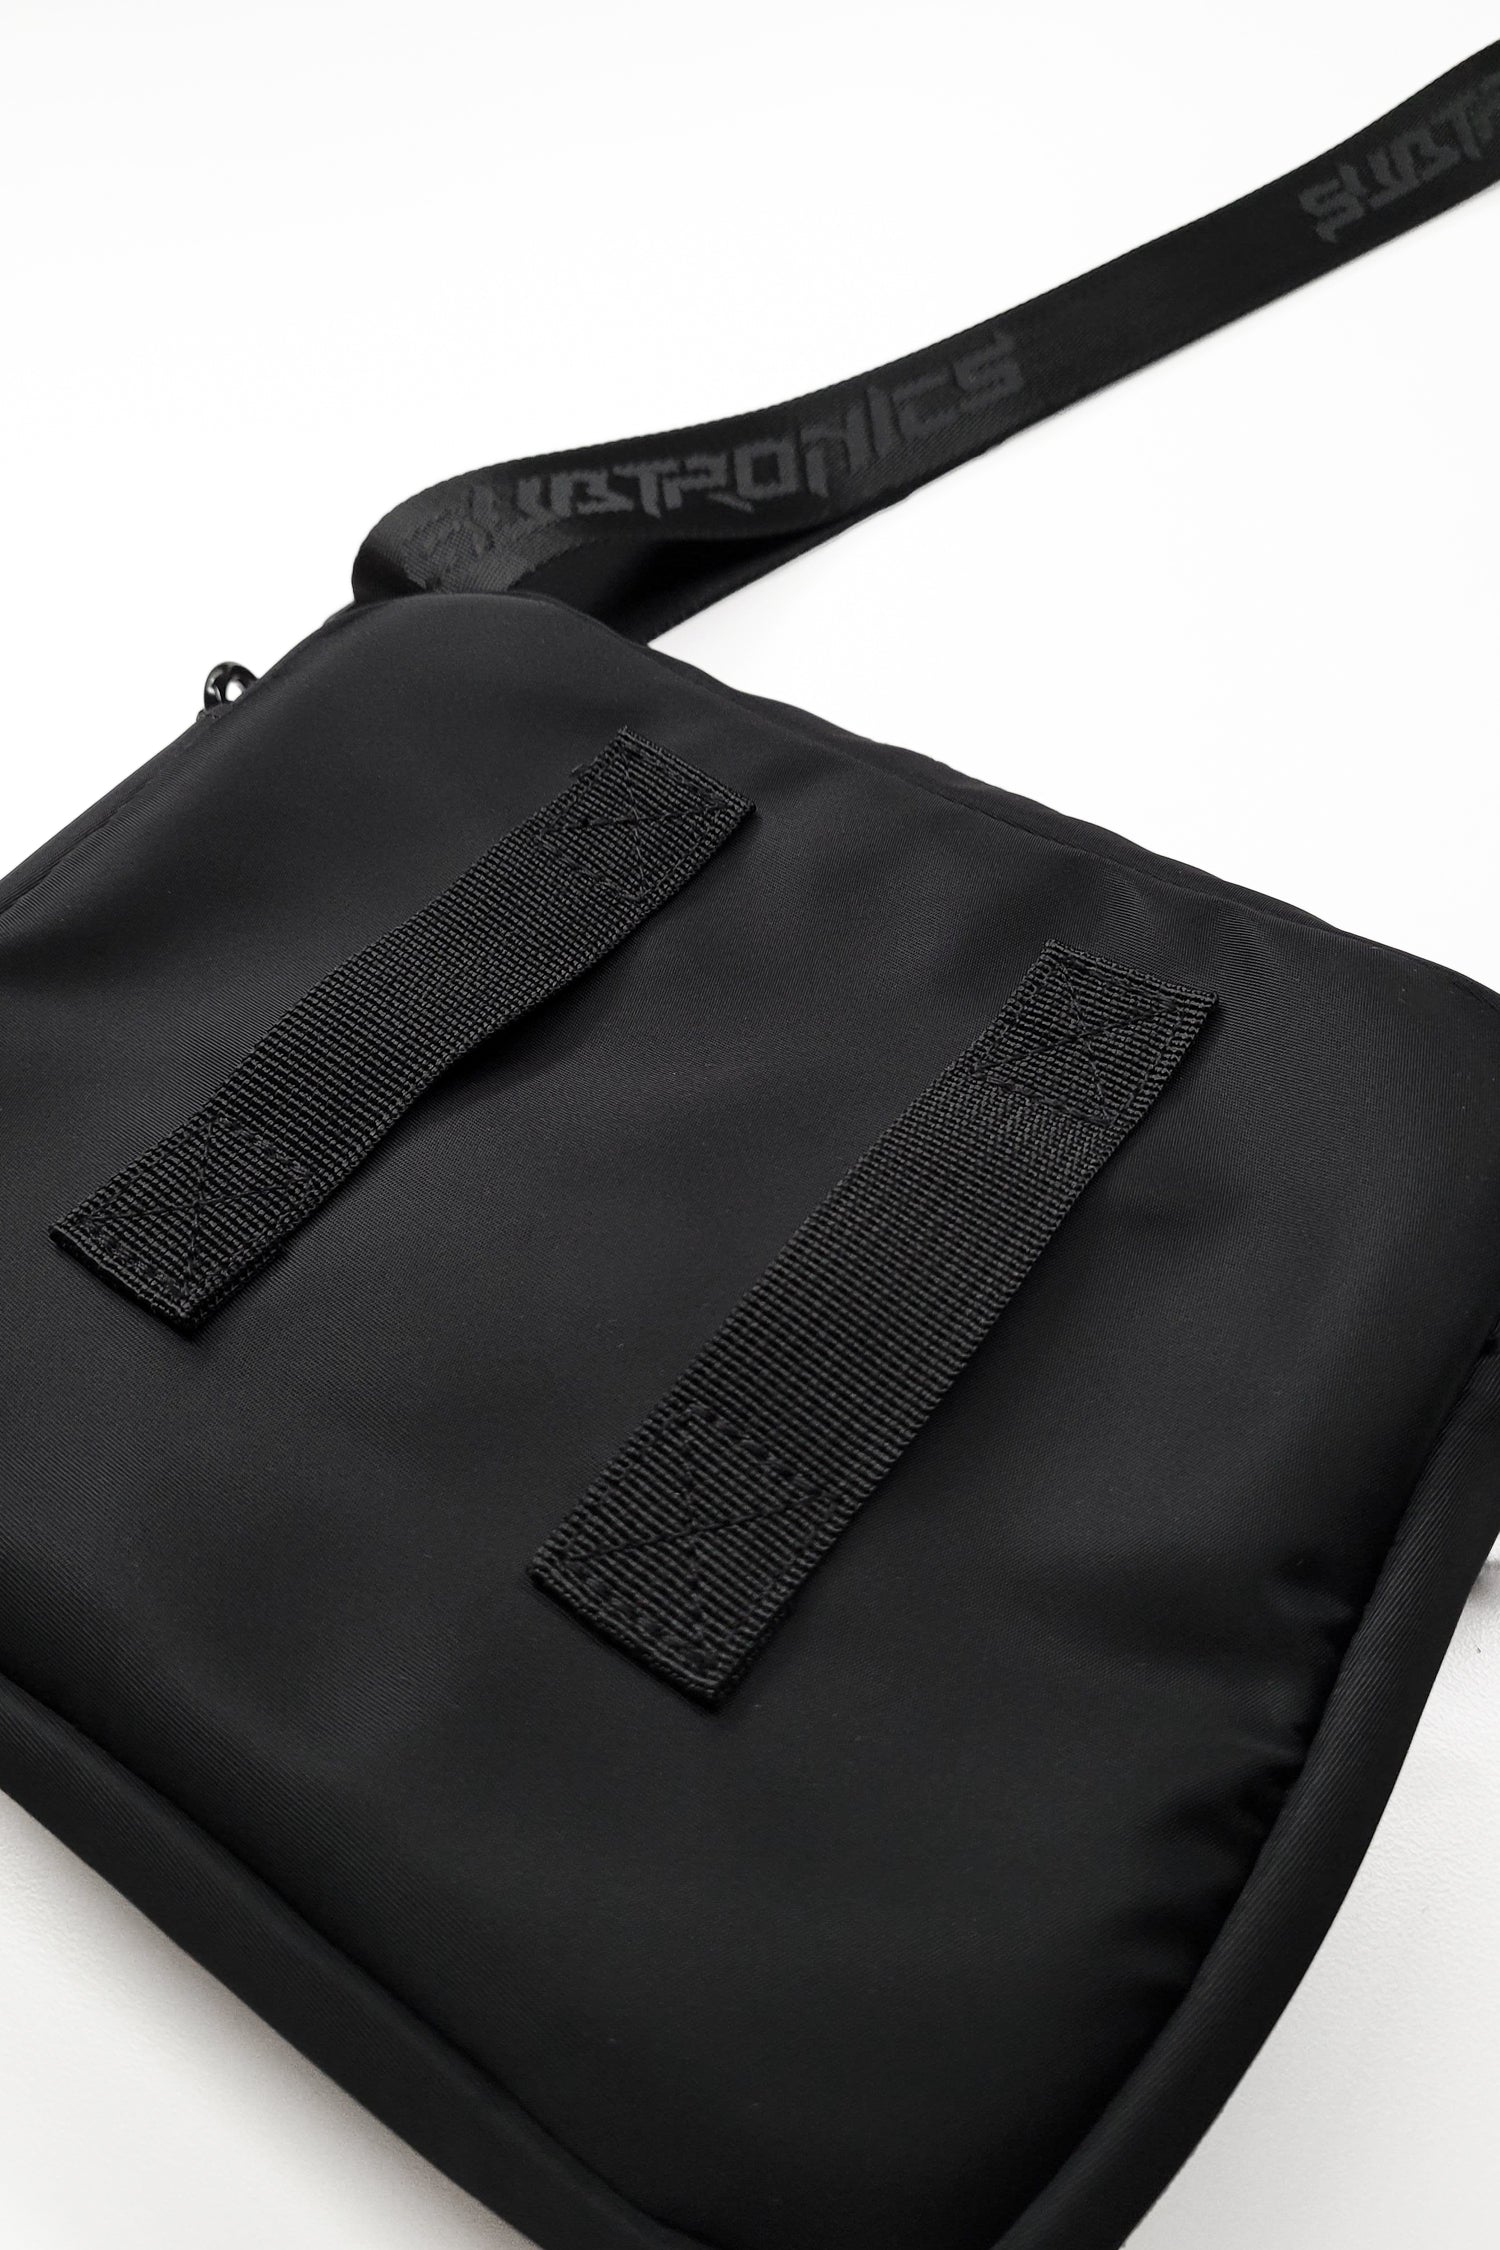 PRE SALE - Subtronics Signature V2 Collection - Doppler Beam Shoulder Bag